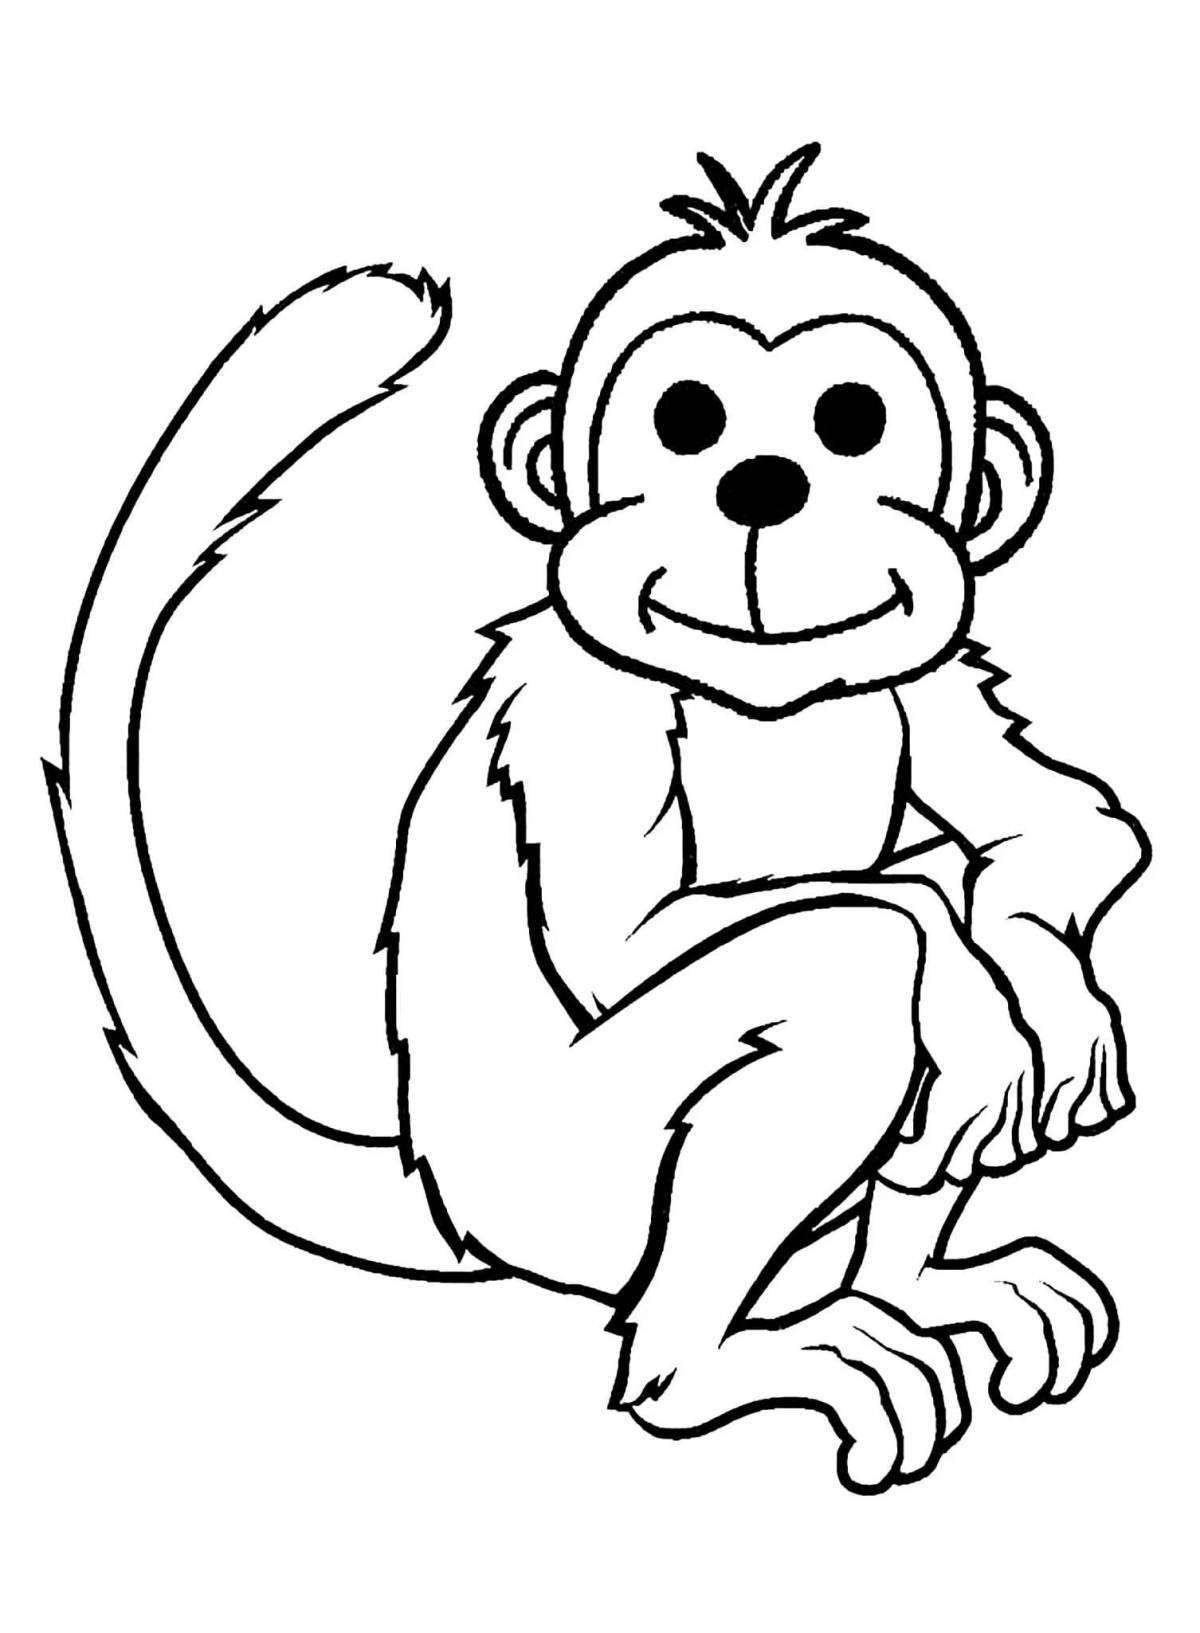 Fun monkey figurine coloring page